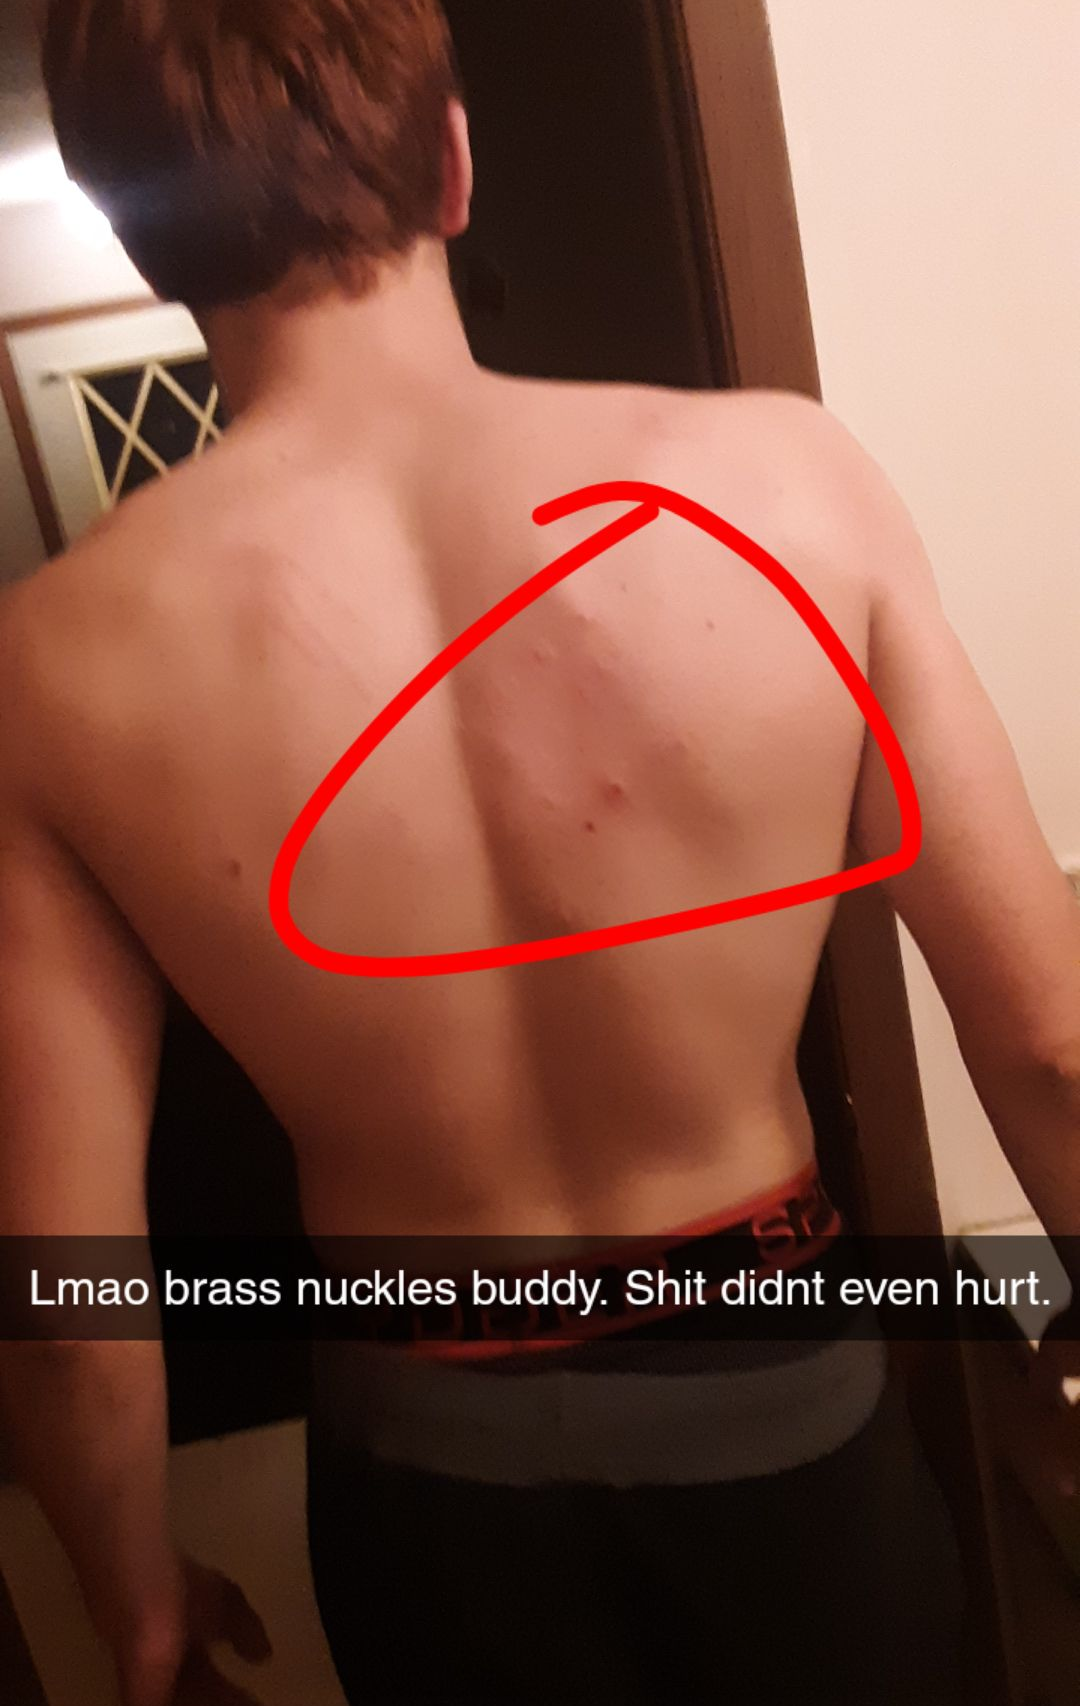 barechestedness - Lmao brass nuckles buddy. Shit didnt even hurt.